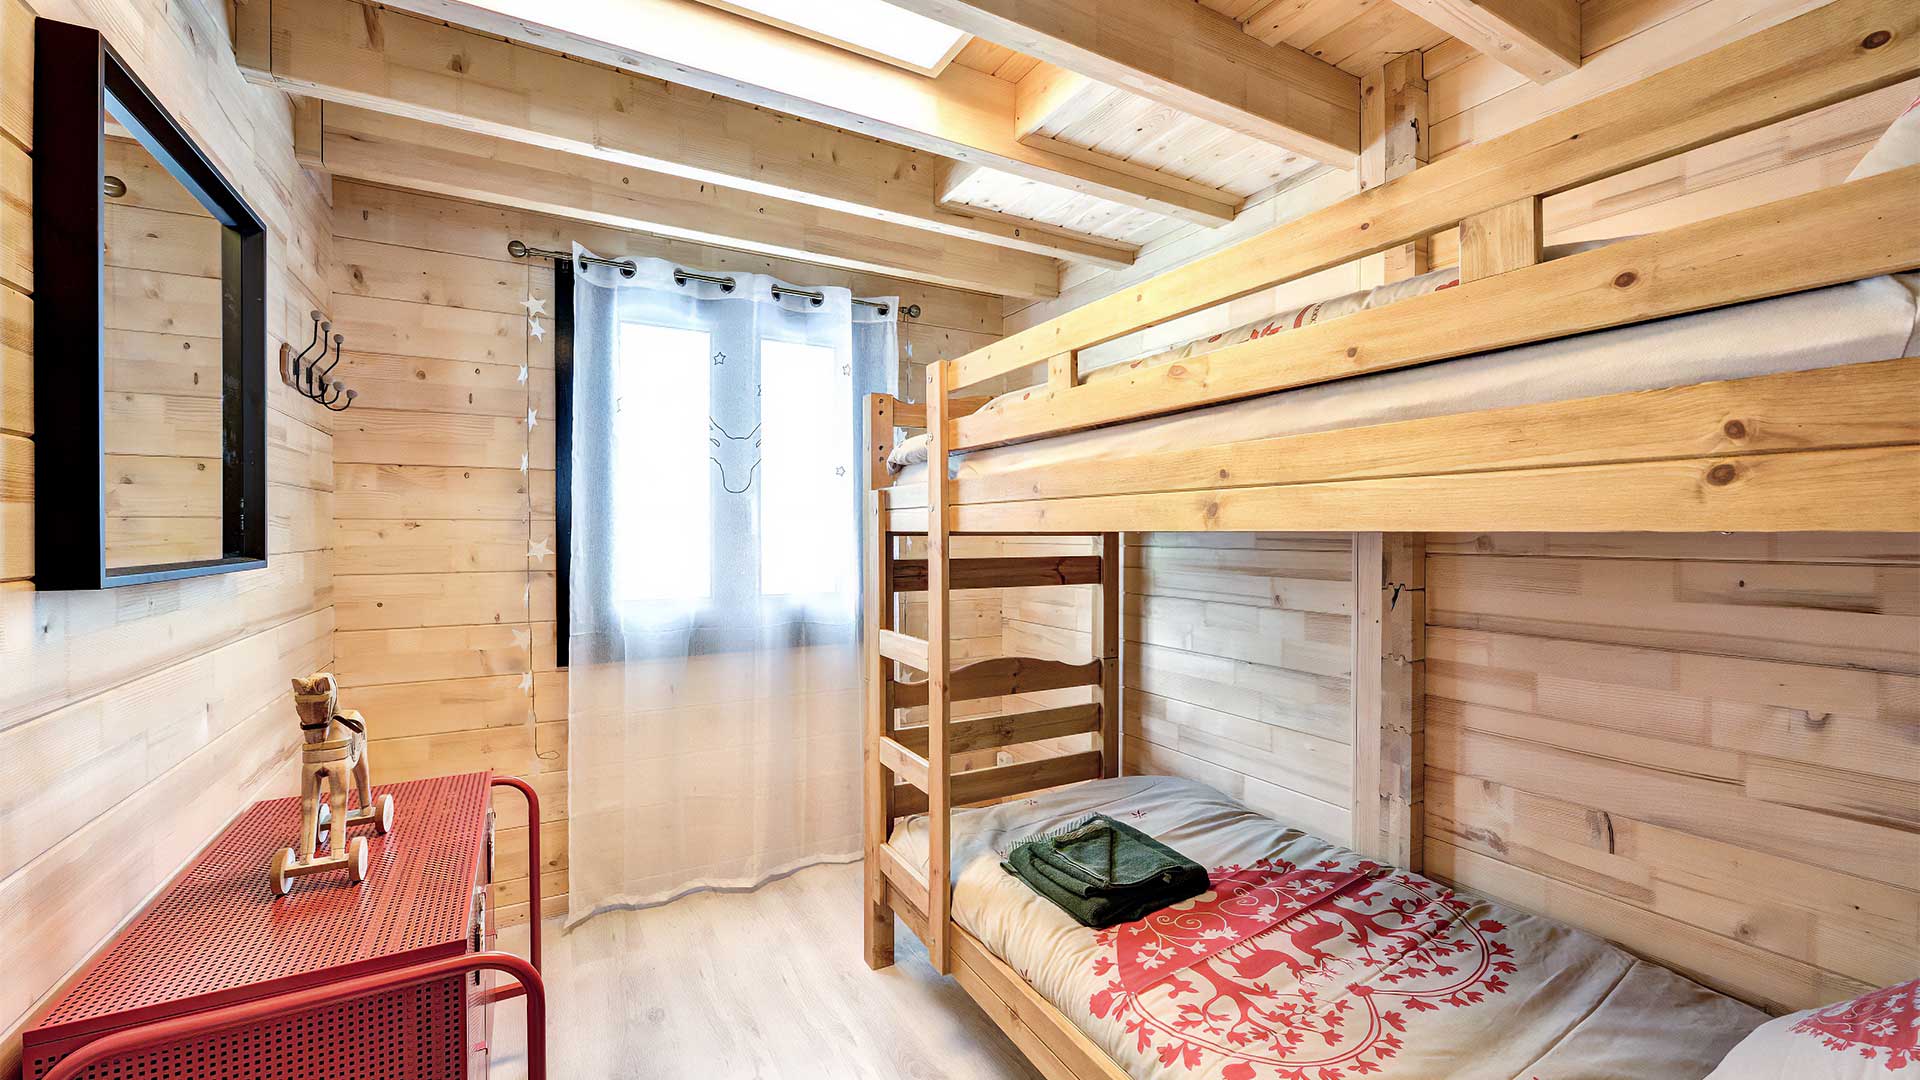 Choucas - Chalet pour 6 personnes : Chambre 2 lits simples - Location de chalet à Briançon